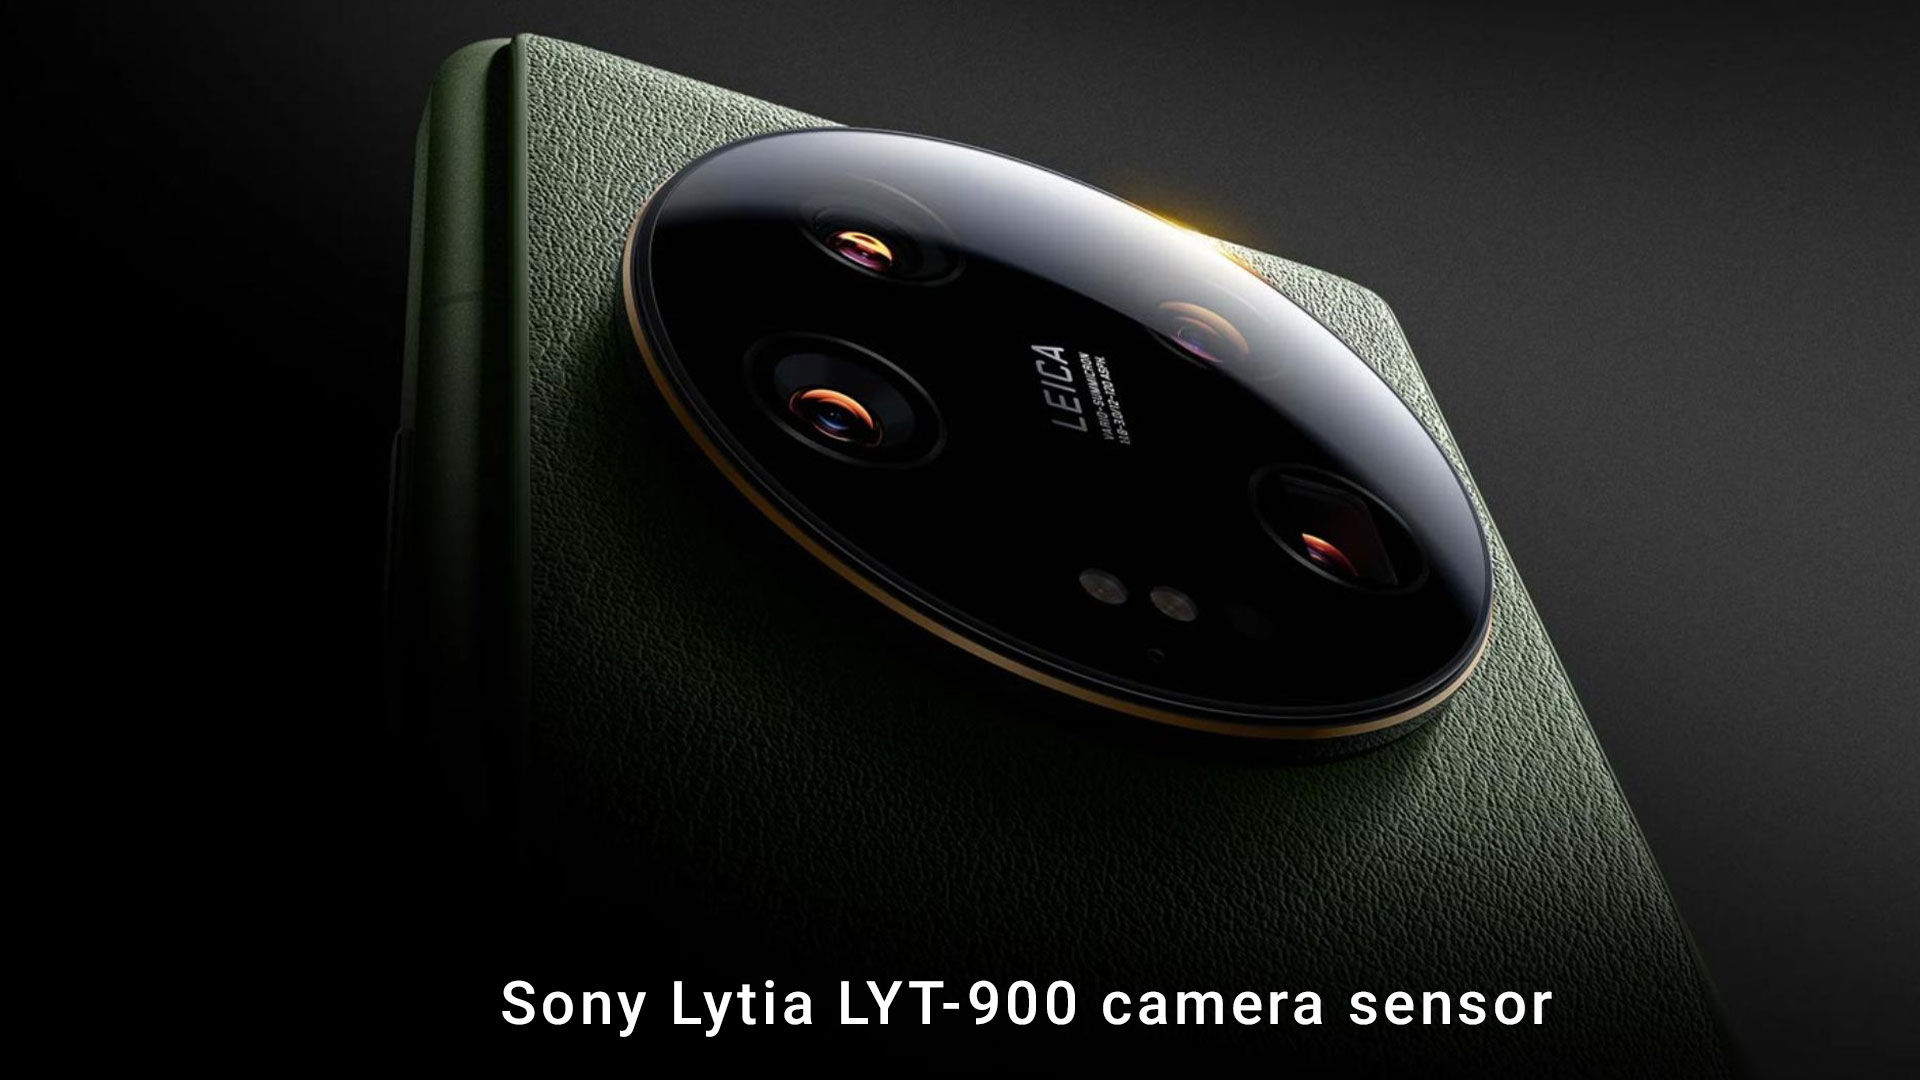 Sony Lytia LYT-900 camera sensor